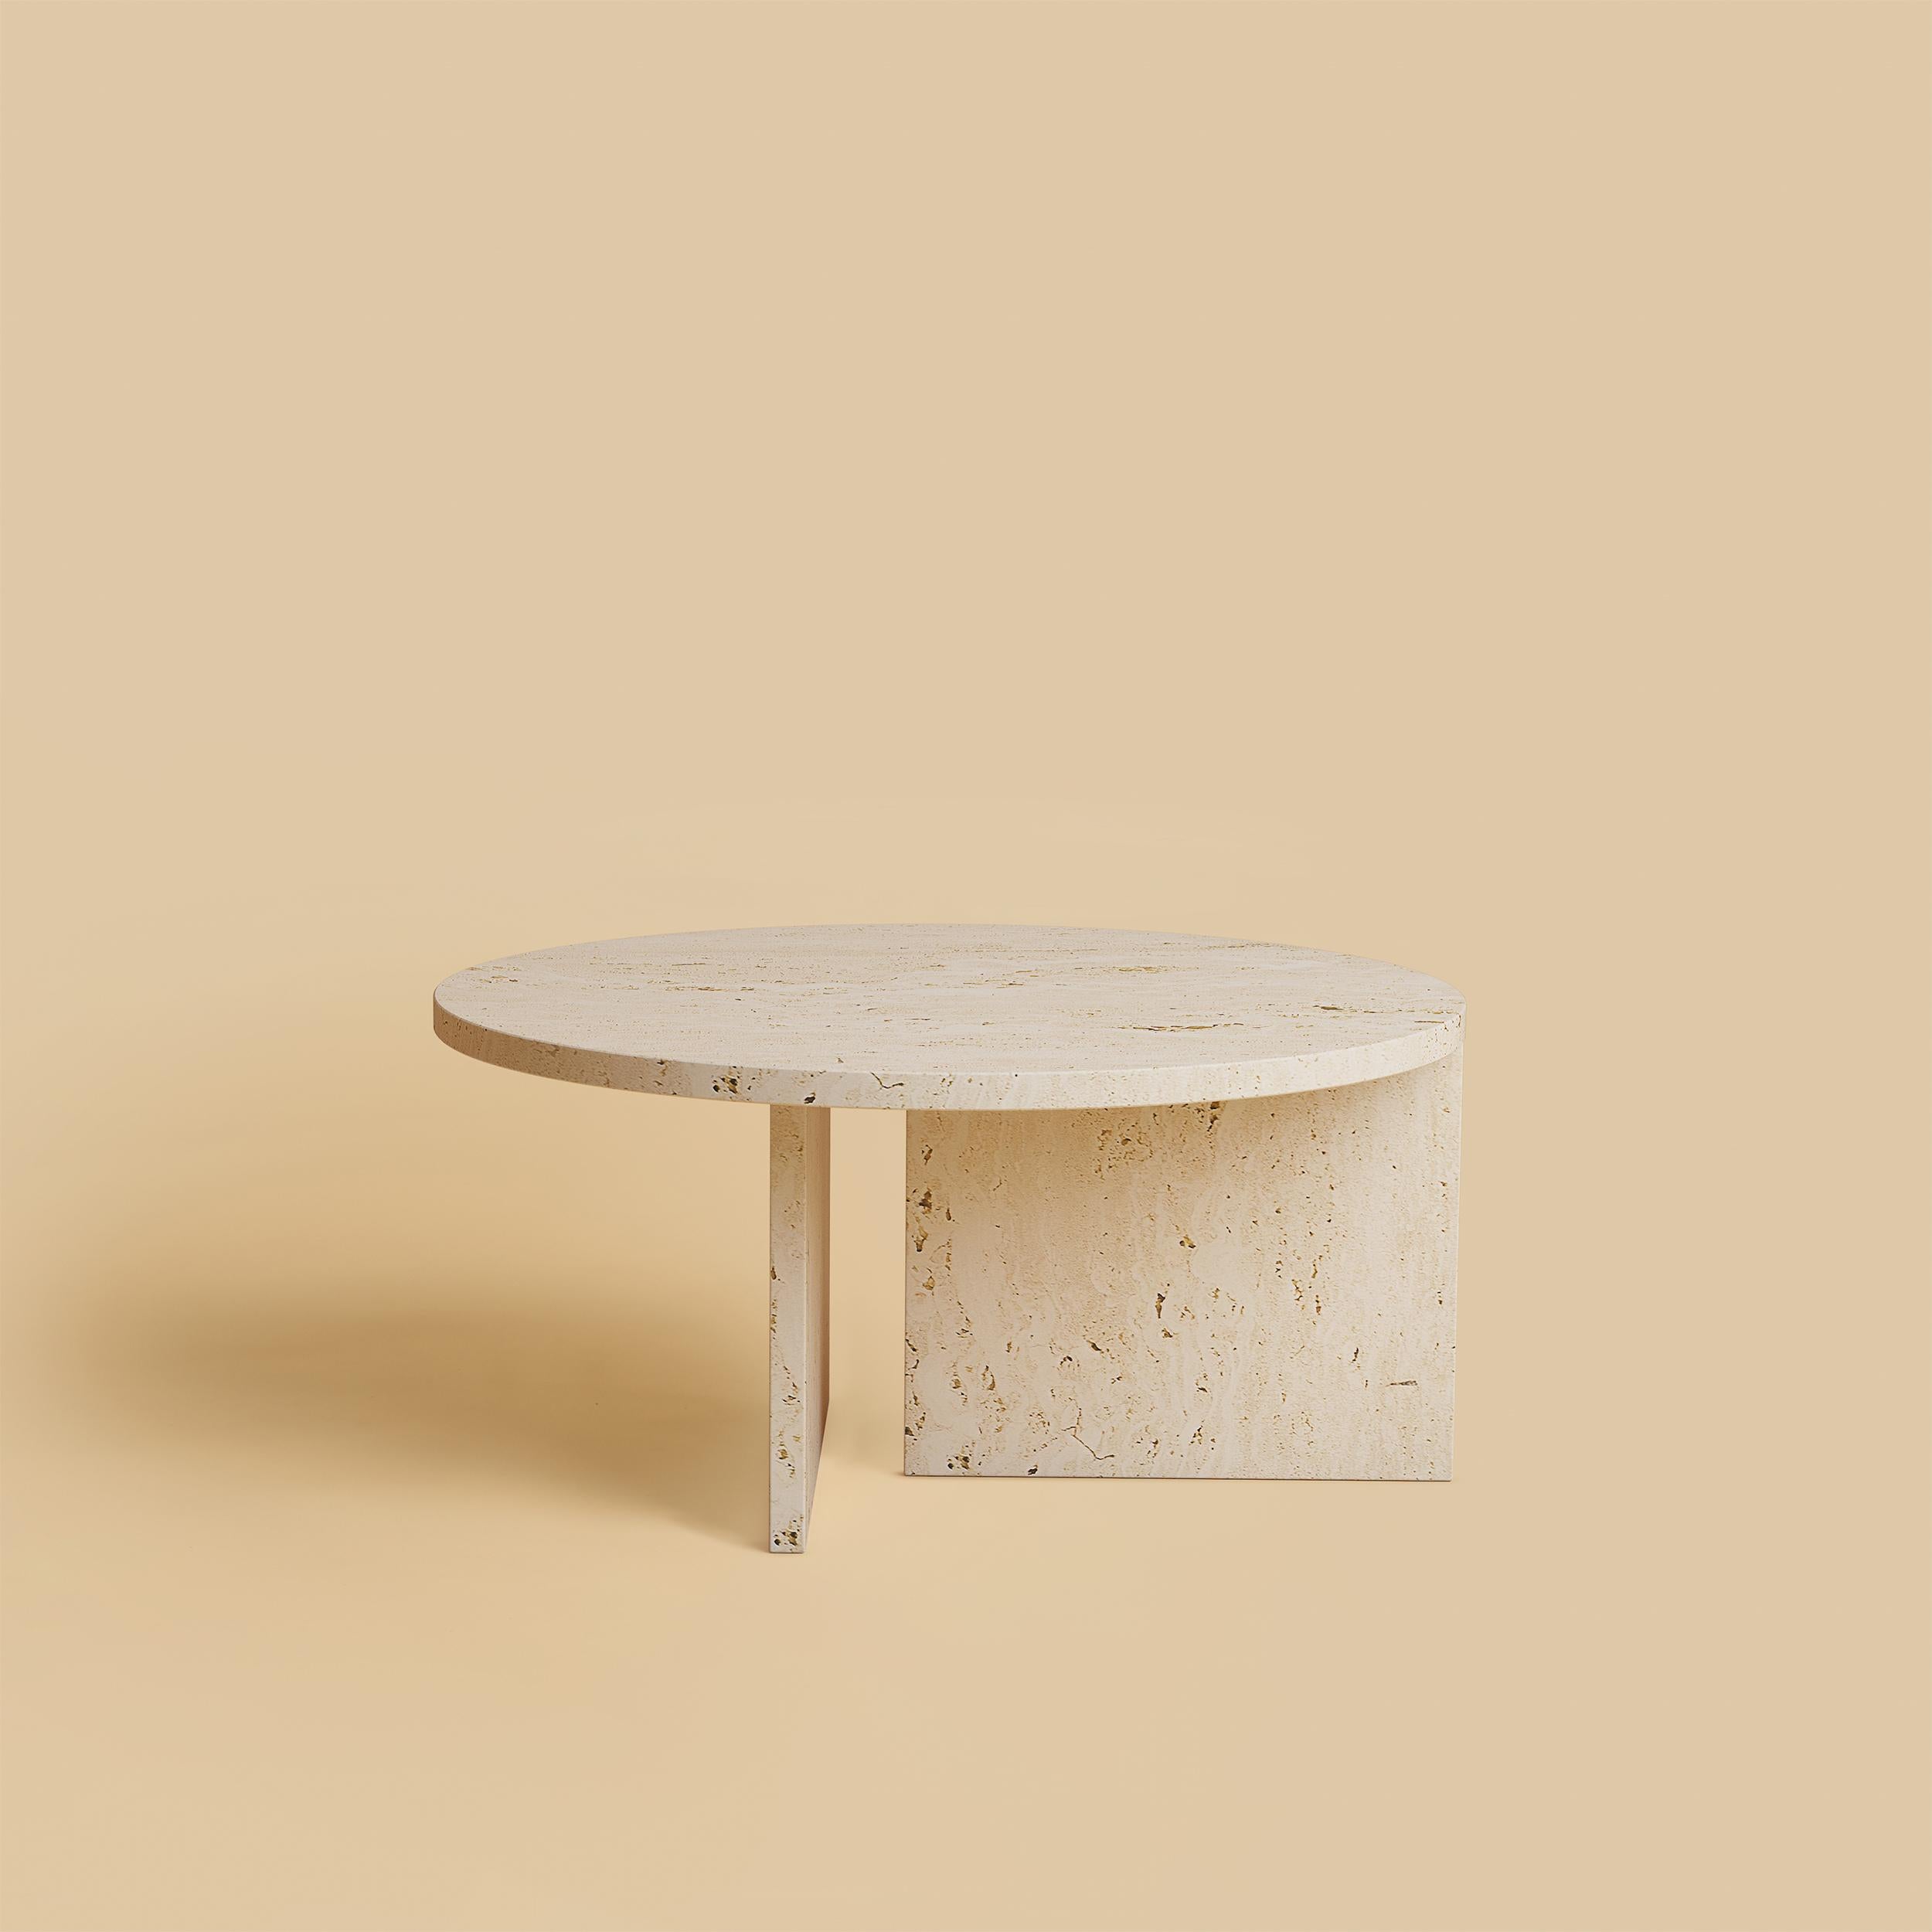 italien Table basse ronde en marbre travertin romain, fabriquée en Italie en vente